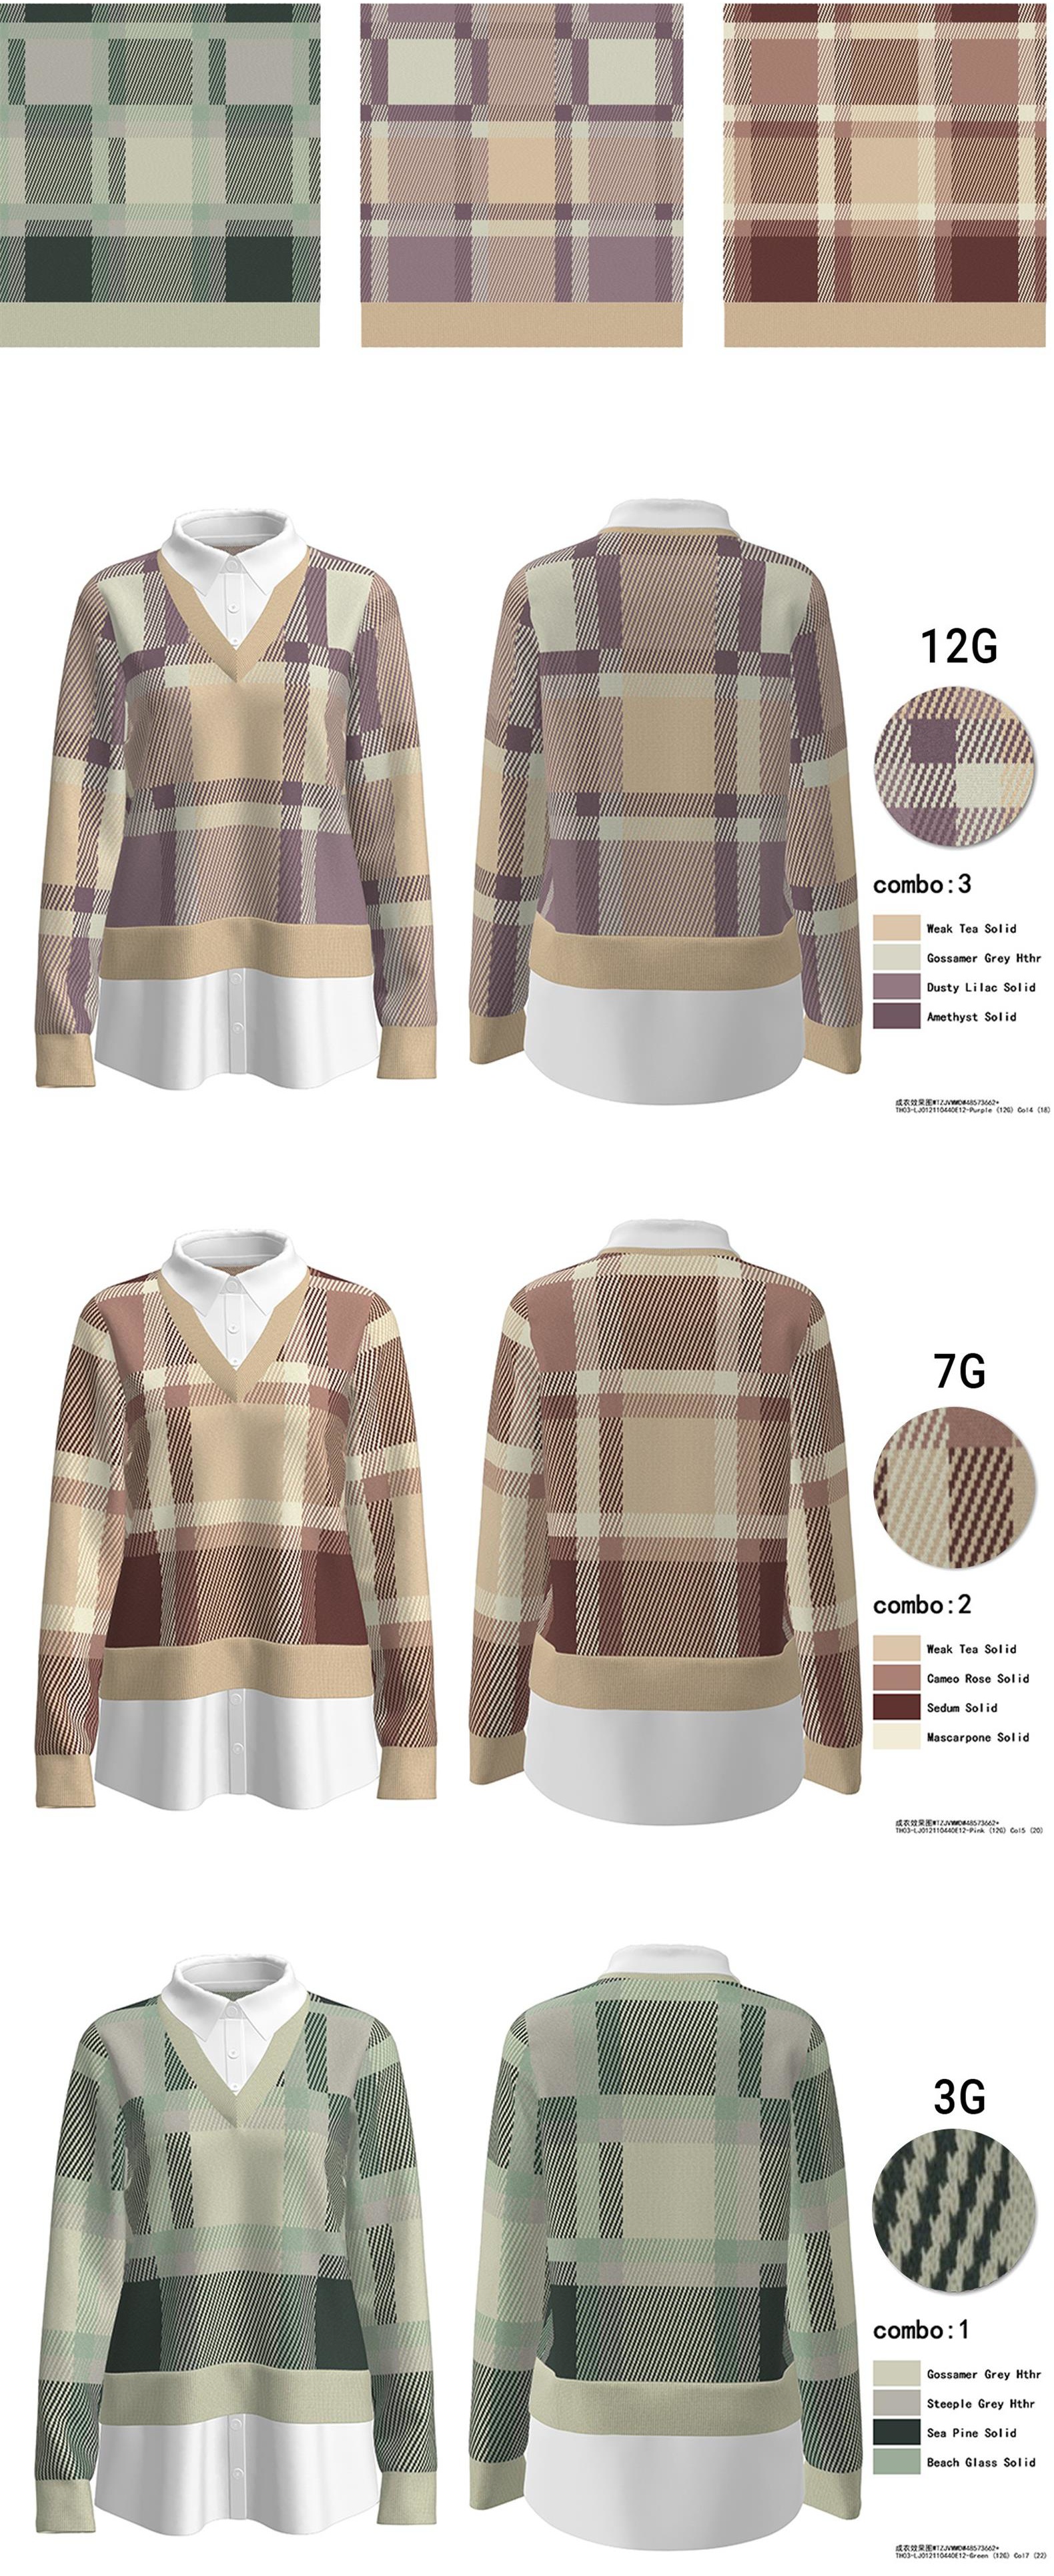 personalized sweater pattern